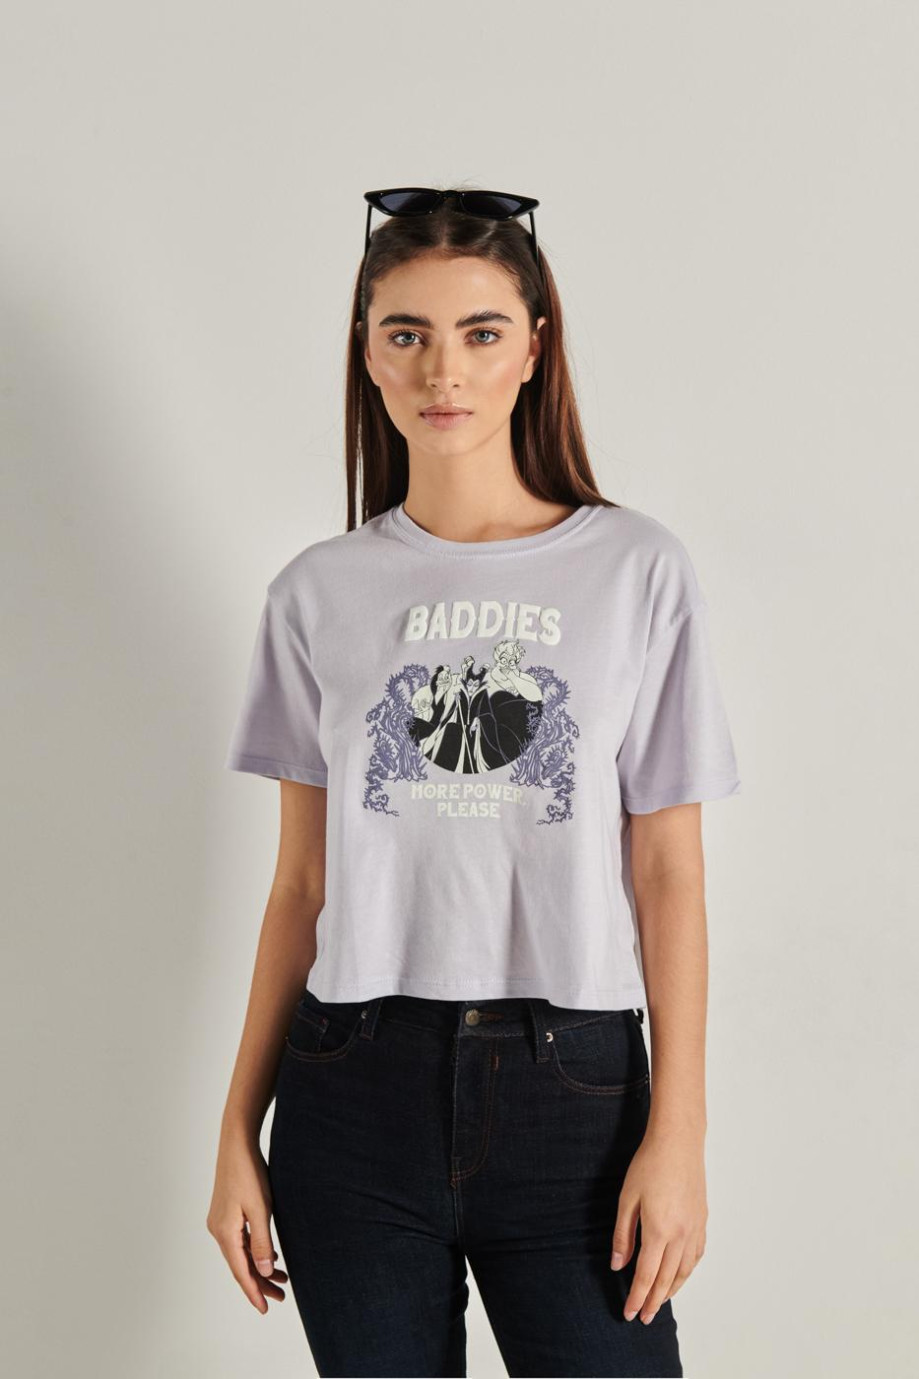 Camiseta lila crop top con diseño de villanas de Disney